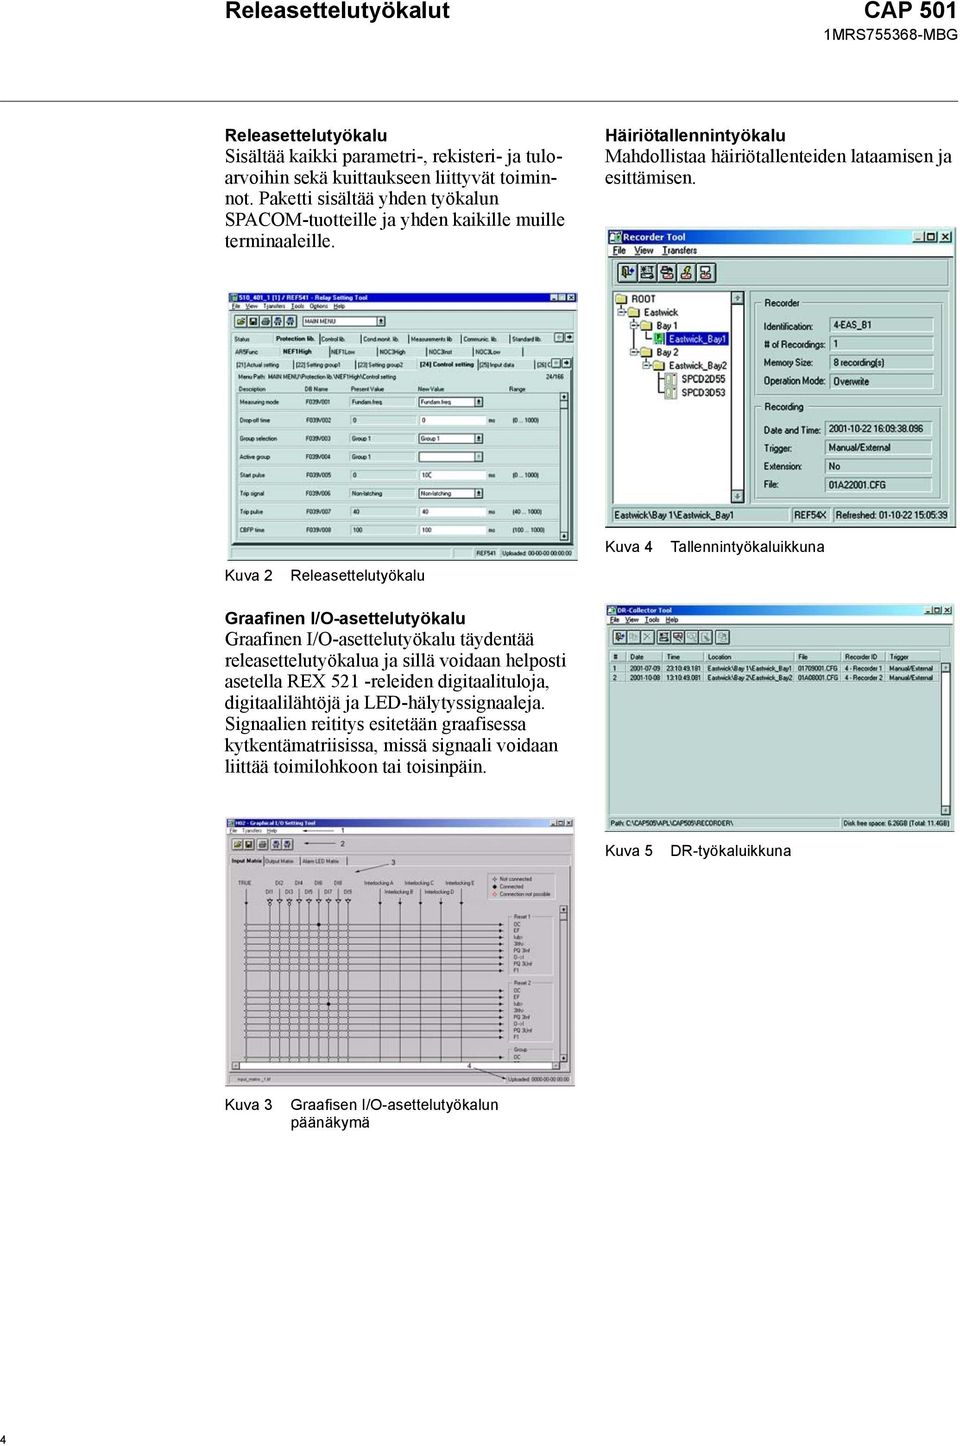 Kuva 2 Releasettelutyökalu Kuva 4 Tallennintyökaluikkuna Graafinen I/O-asettelutyökalu Graafinen I/O-asettelutyökalu täydentää releasettelutyökalua ja sillä voidaan helposti asetella REX 521